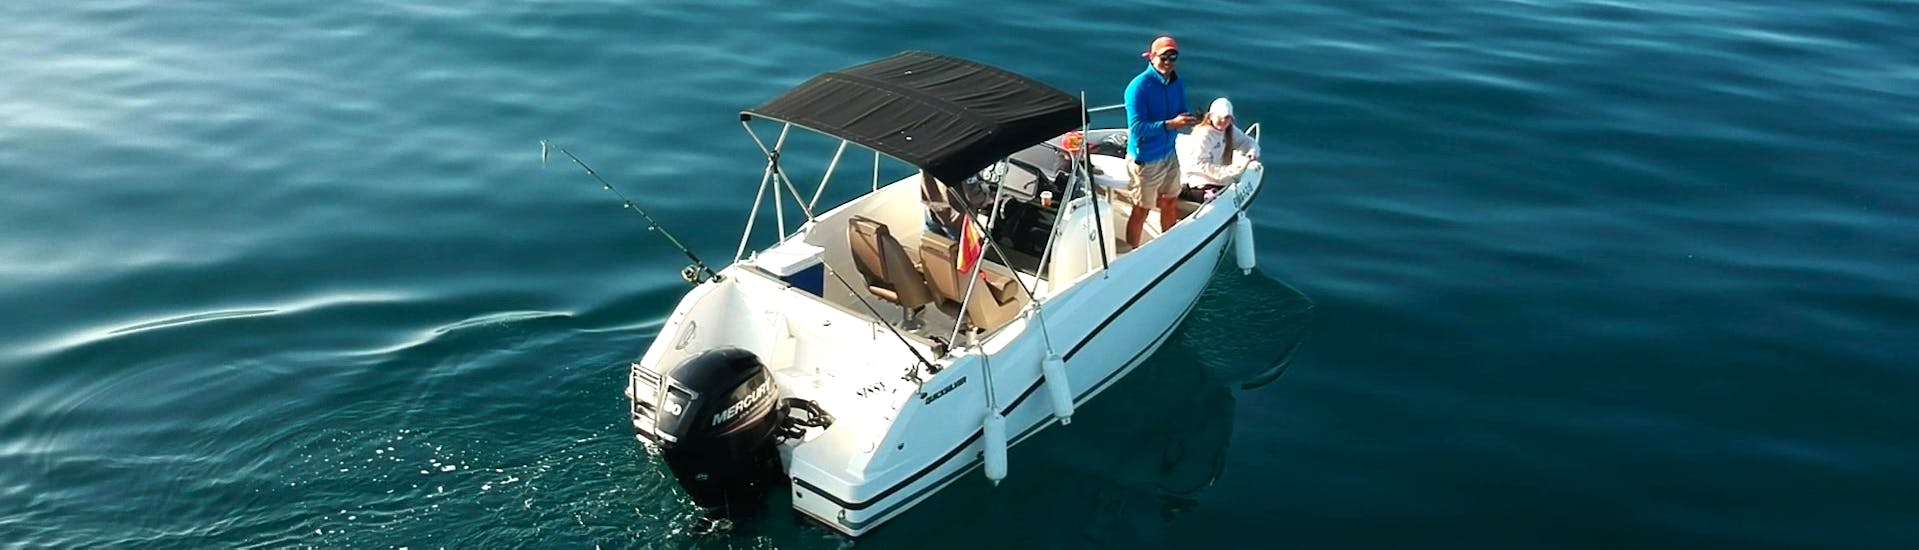 Eine Gruppe von Teilnehmern auf dem Schnellboot Quicksilver 555, umgeben von dem wunderschönen blauen Wasser der Bucht von Estepona, während einer privaten Bootstour mit South Olé Sails Estepona.